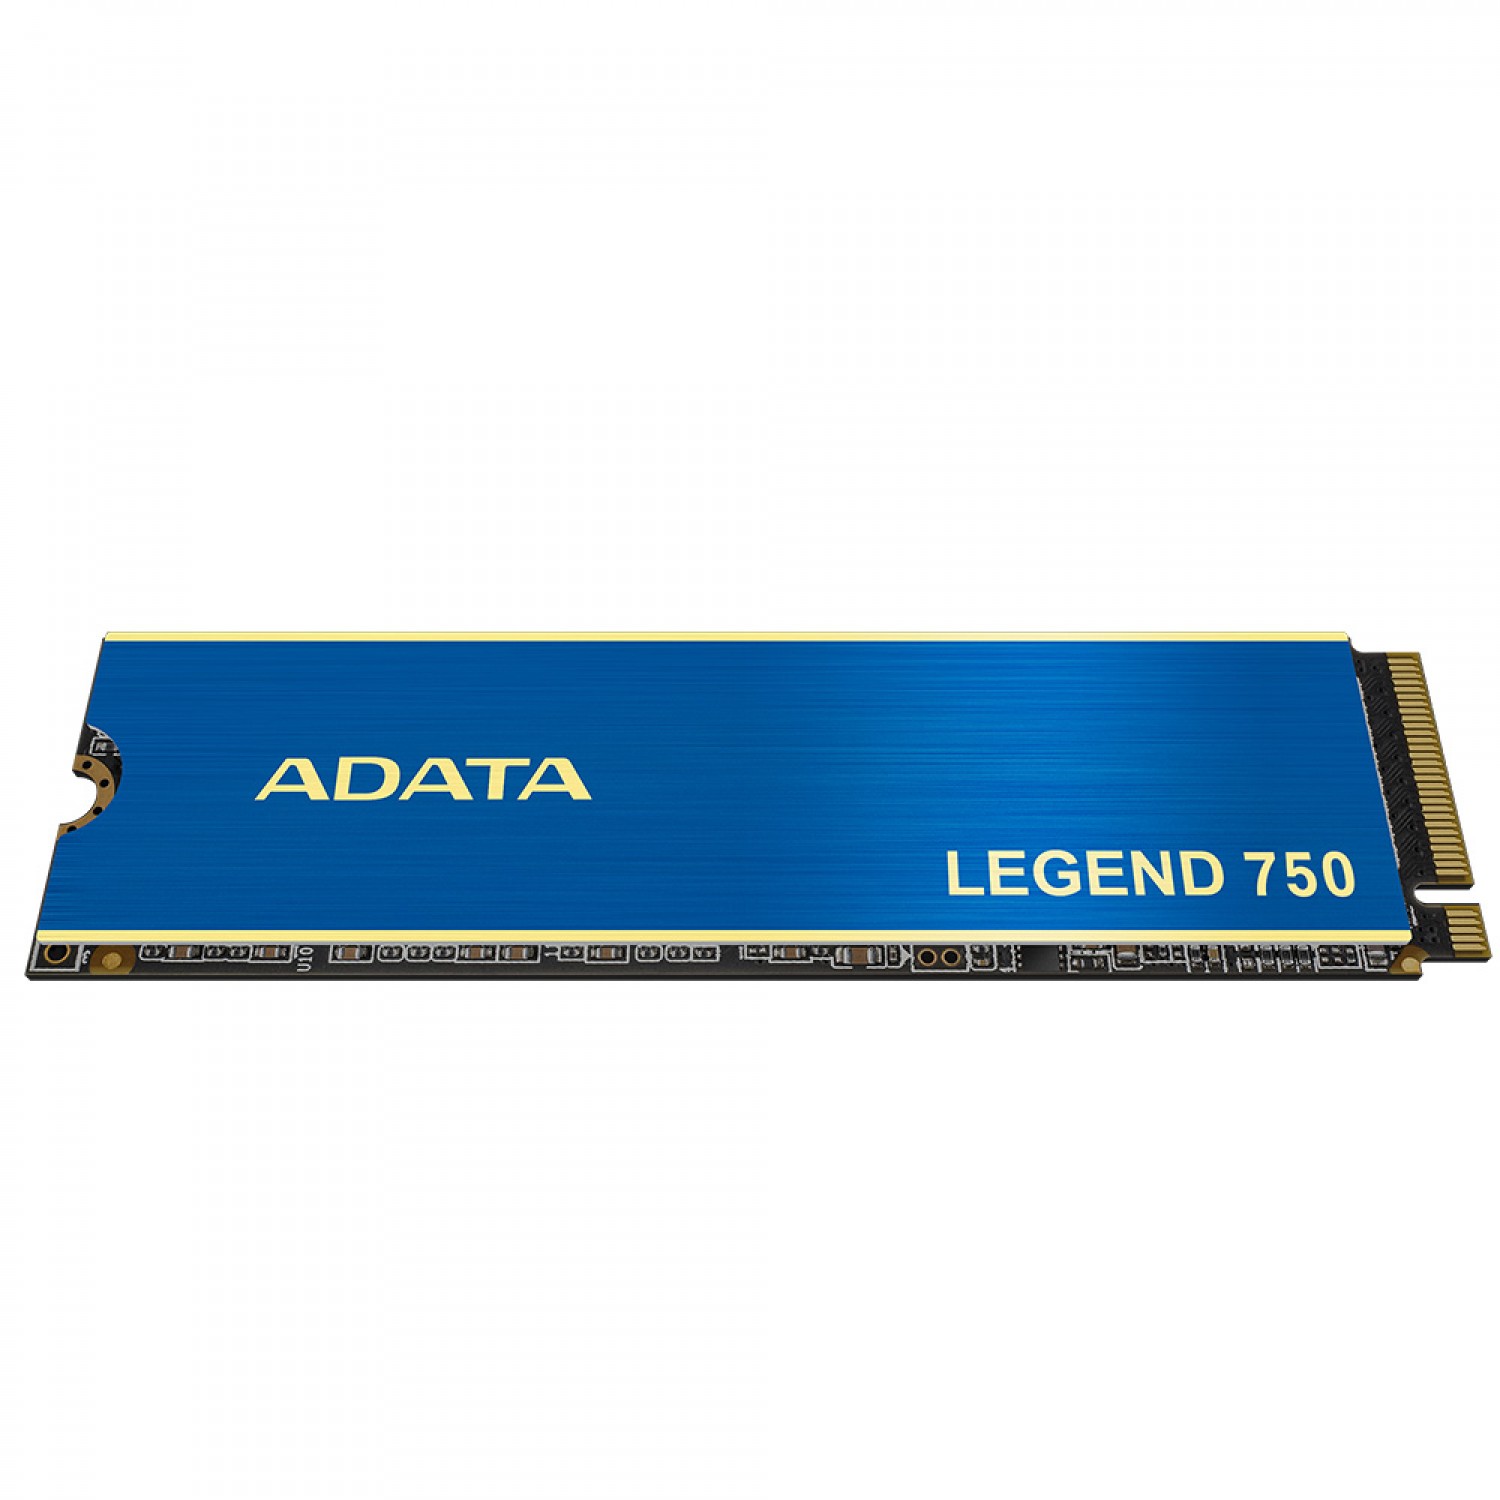 حافظه اس اس دی ADATA Legend 750 1TB-1